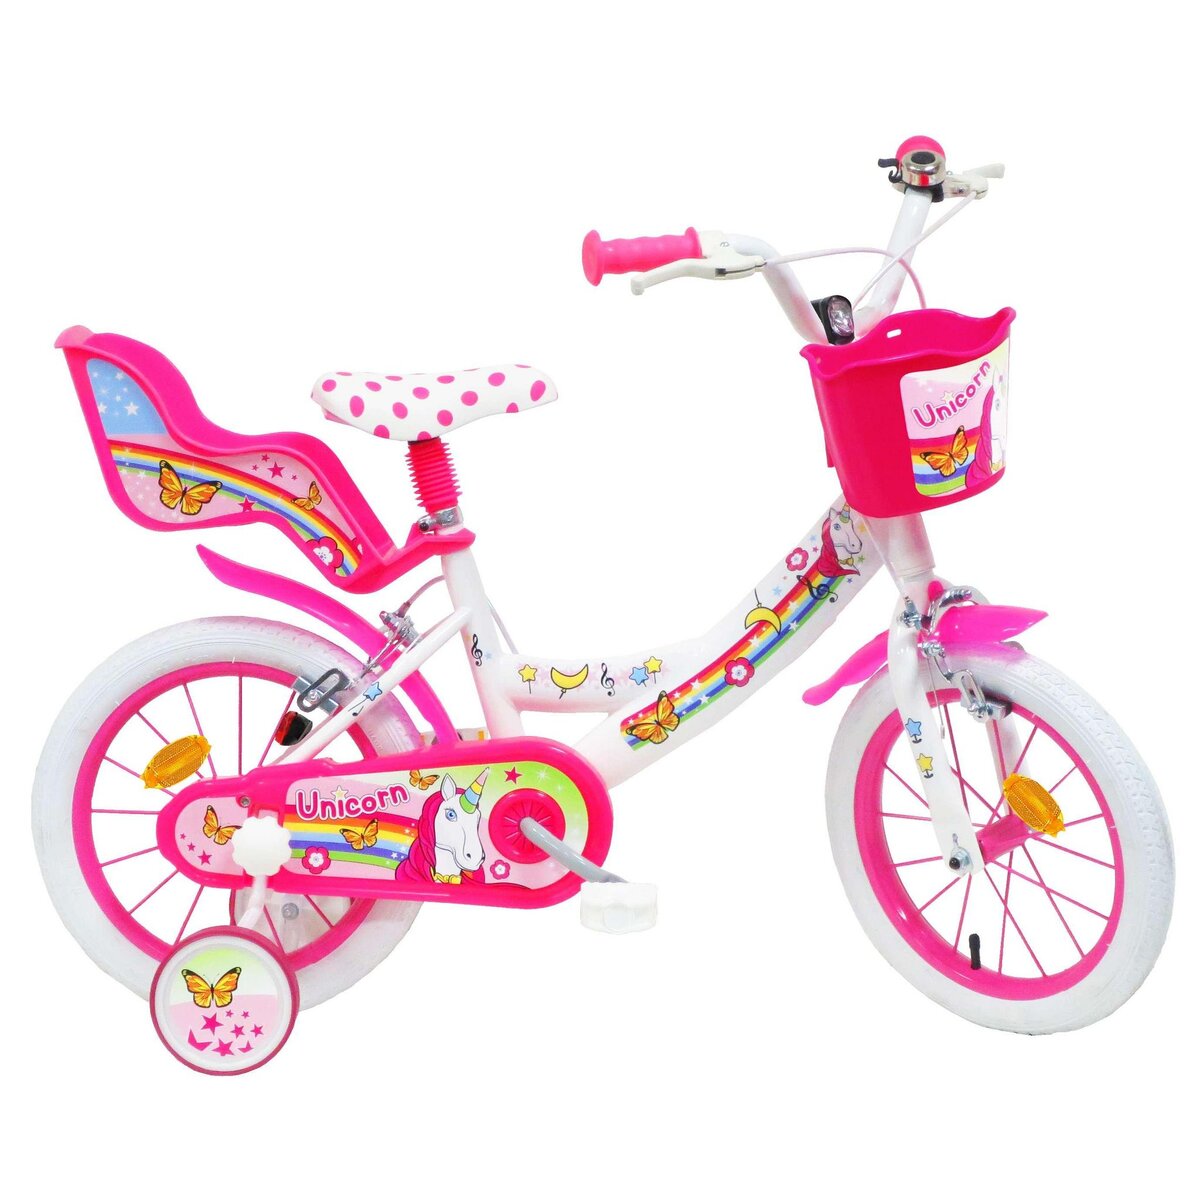  Vélo 14 Fille LICORNE/UNICORN pour enfant de 95/110 cm avec stabilisateurs à molettes - 2 freins - Panier avant - Porte poupée arrière